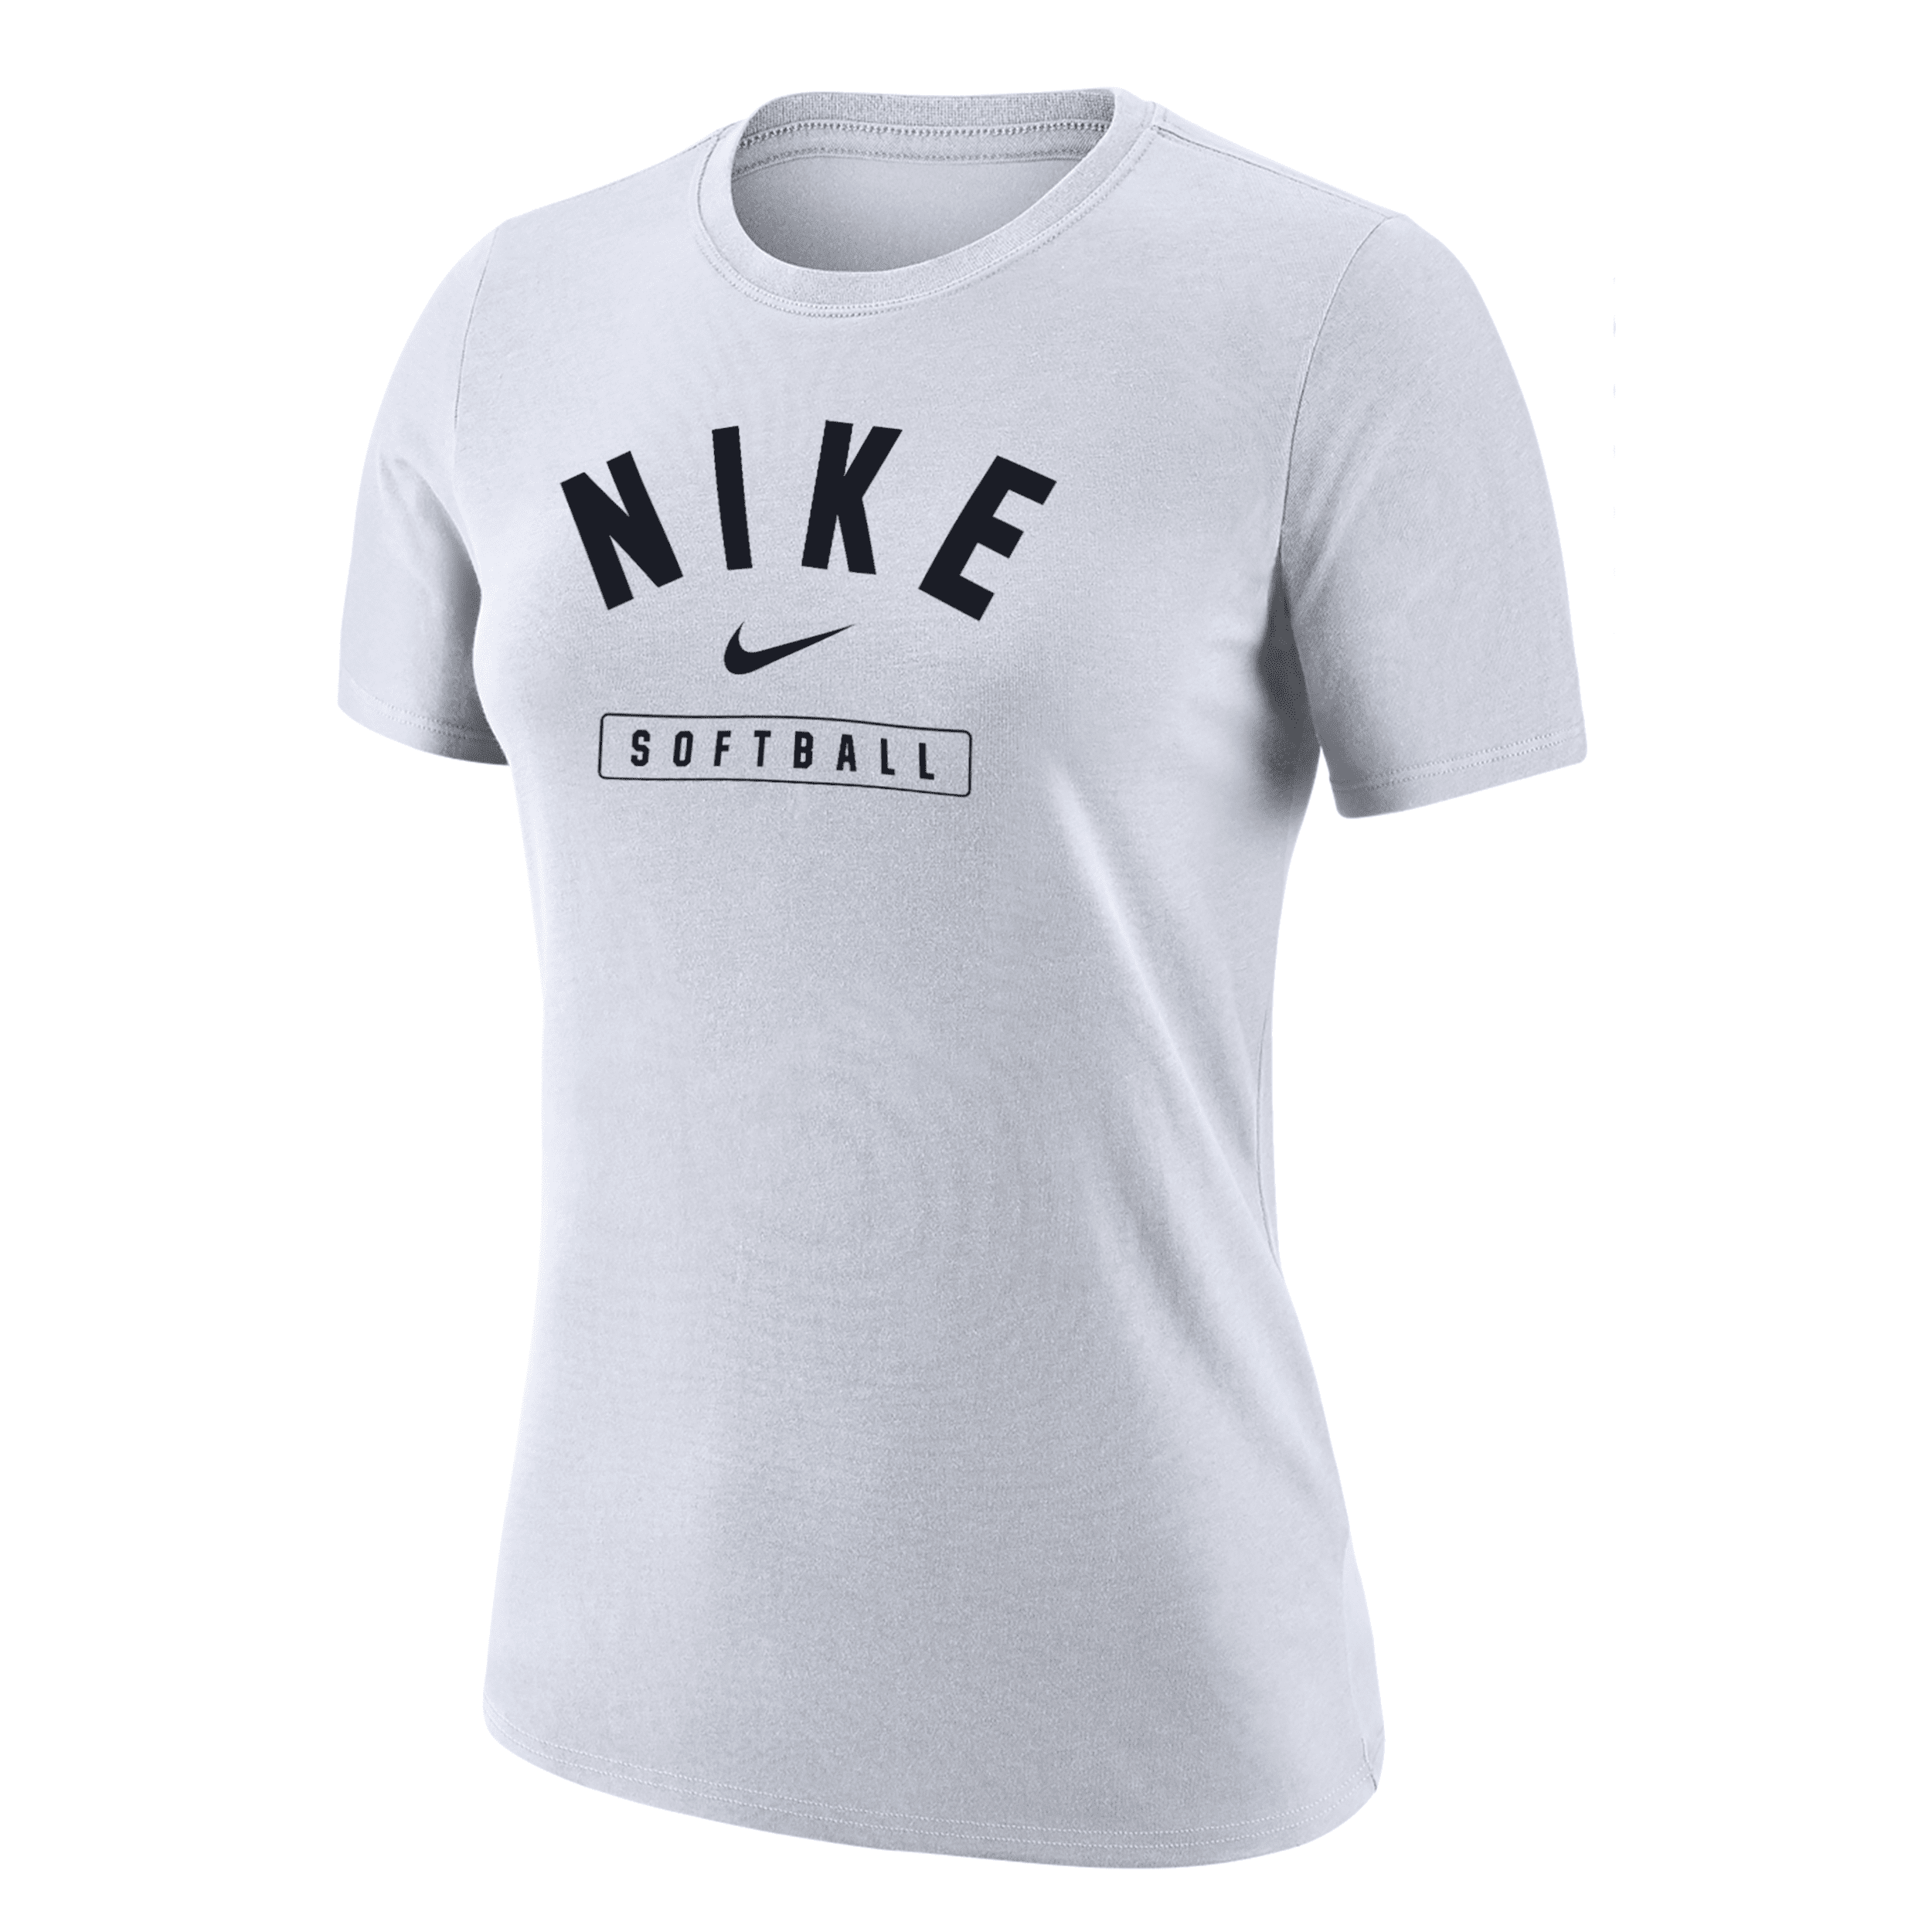 Nike Women's Softball T-shirt In White